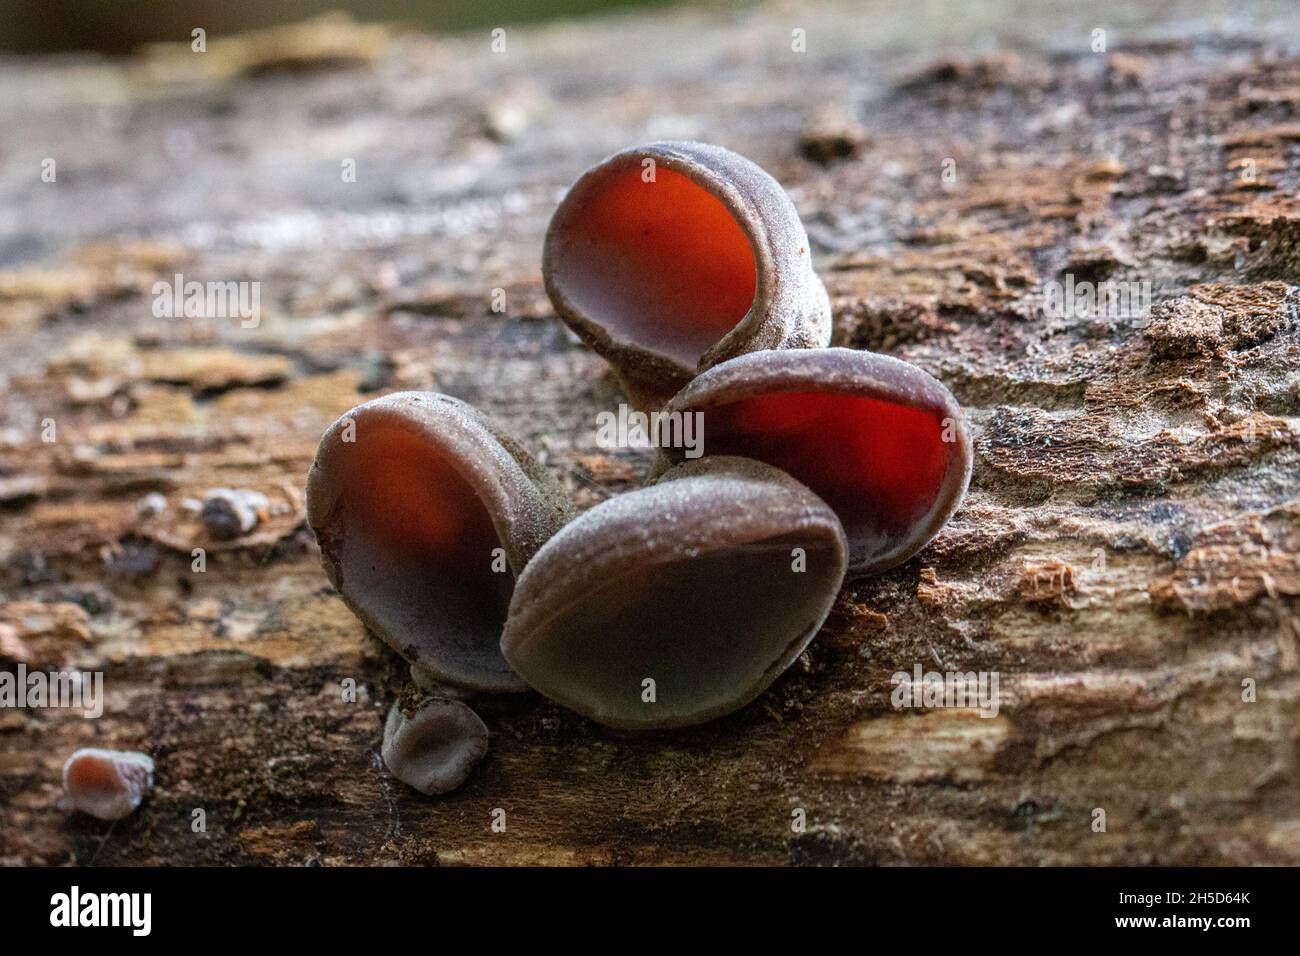 ear shaped mushroom growing on a fallen log (Auricularia auricula-judae) Stock Photo